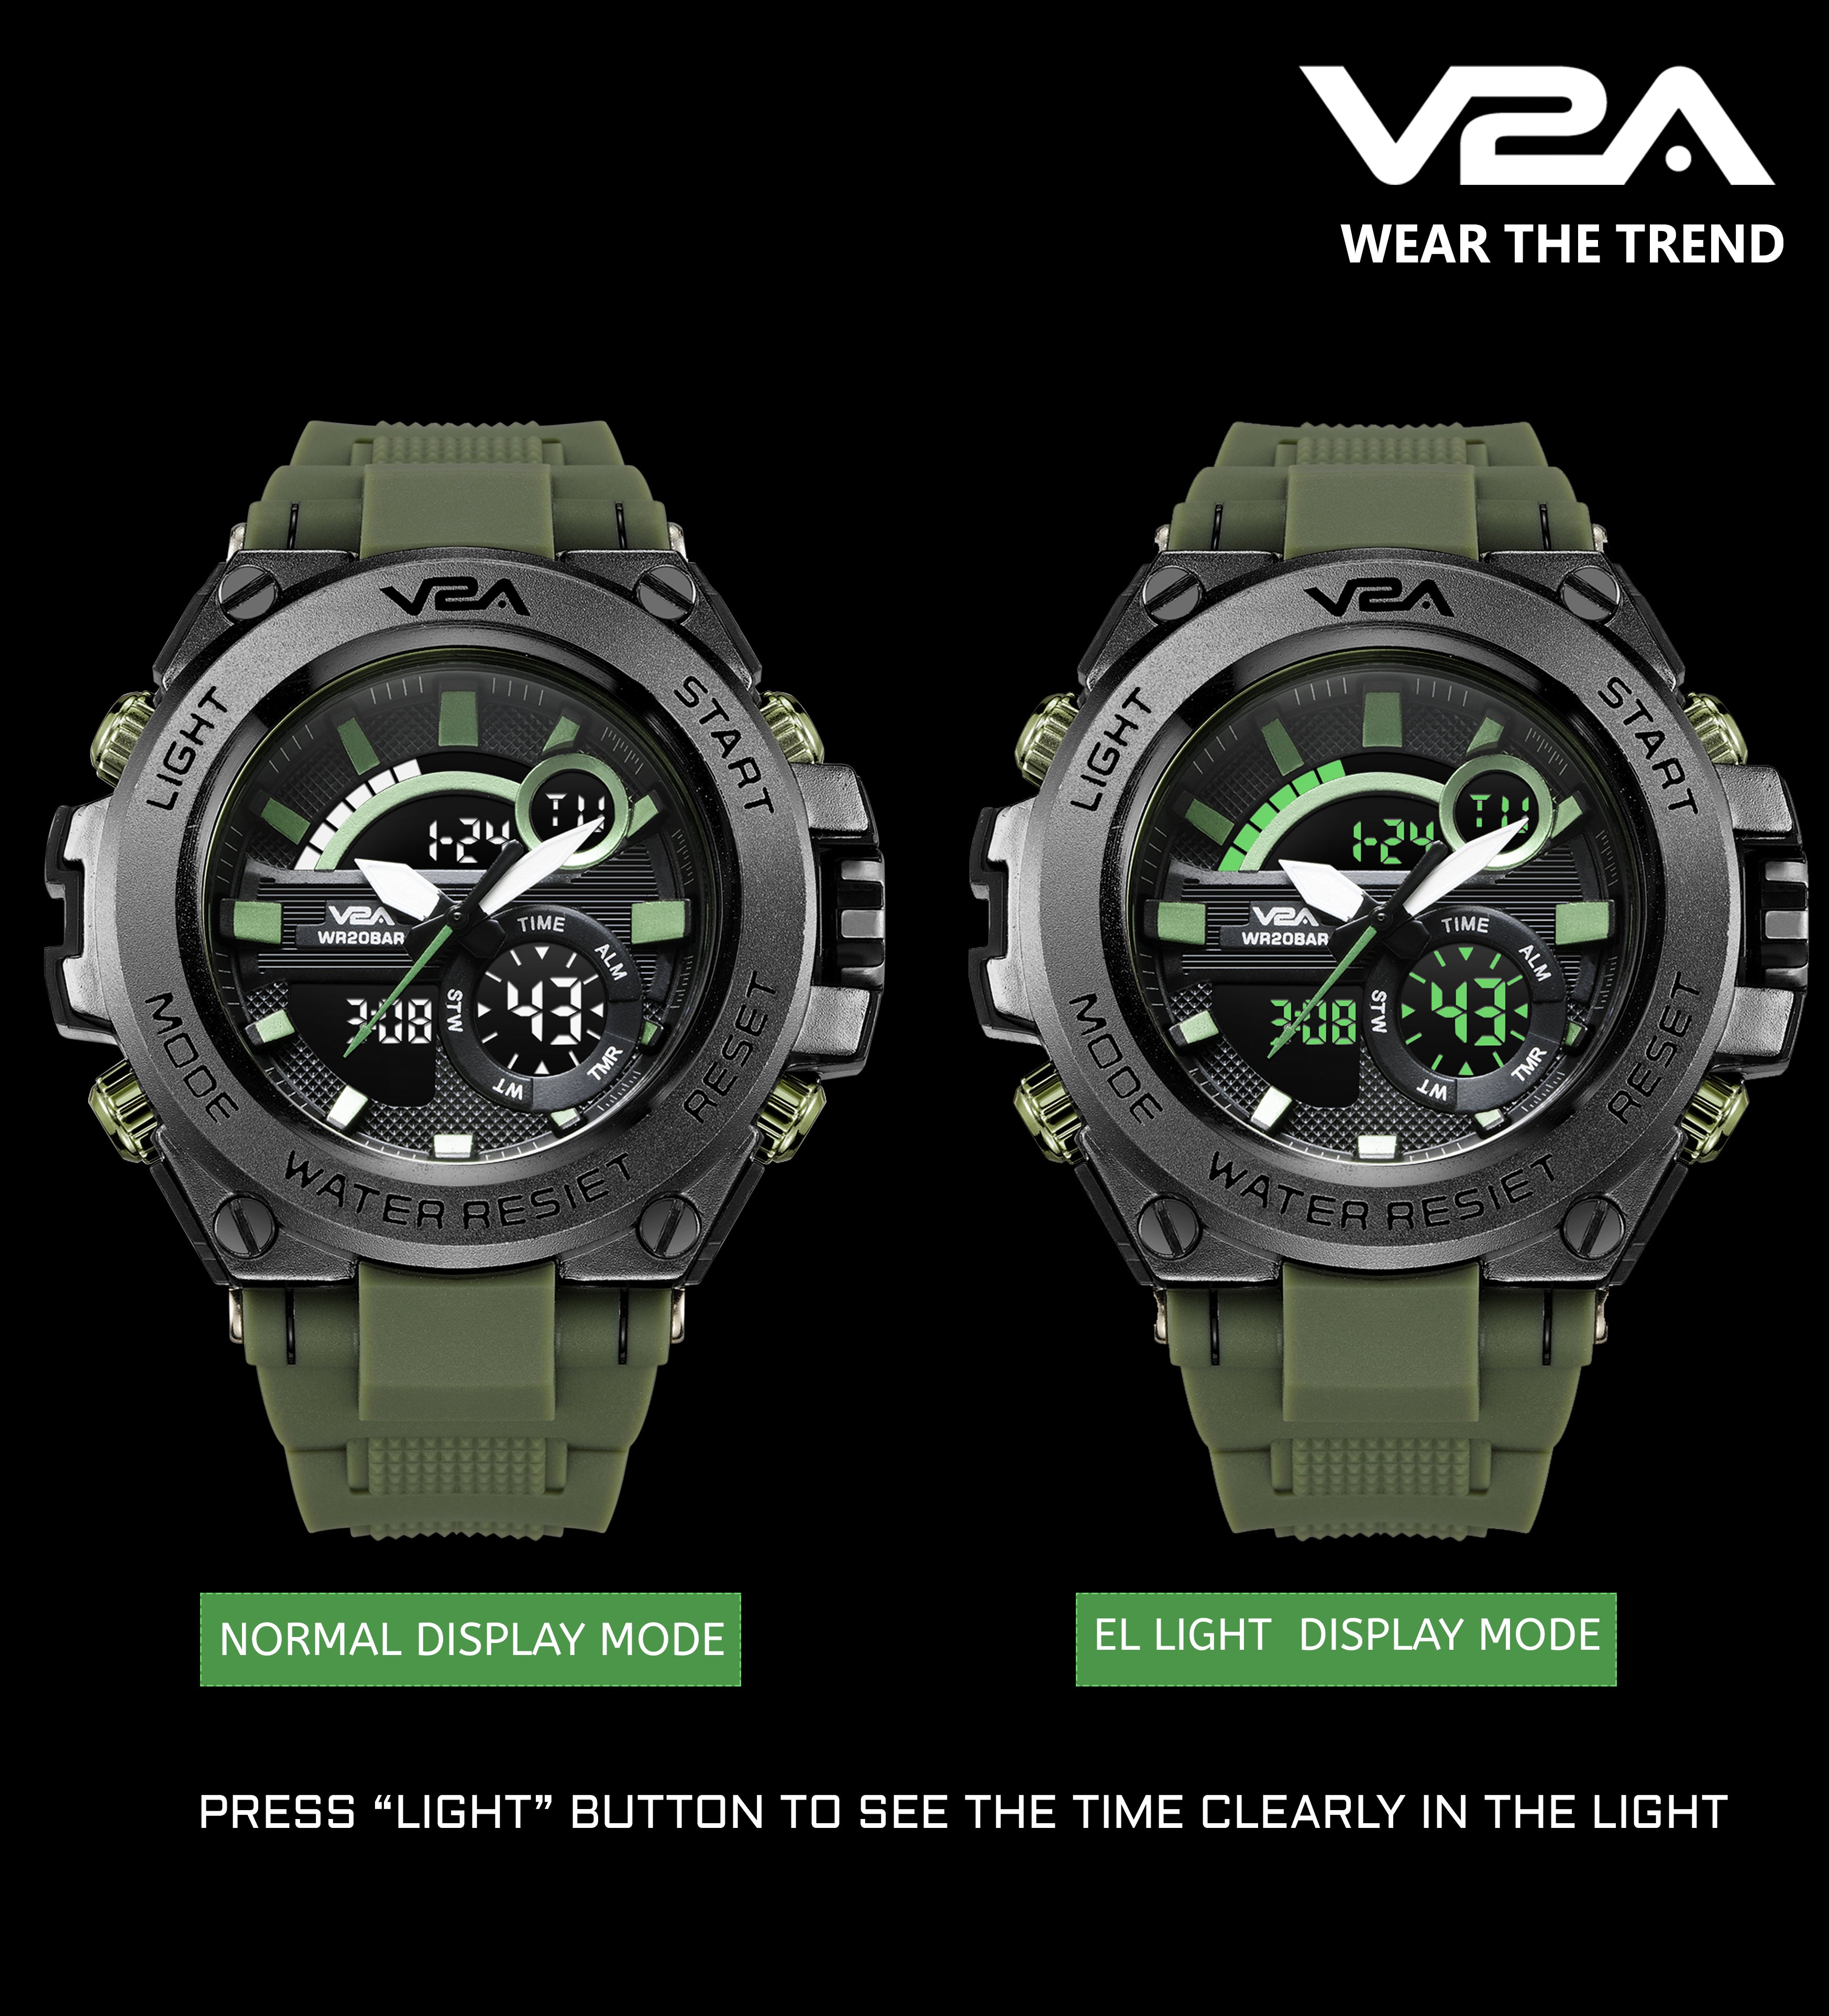 V2A Watch ⌚ (ʙᴇꜱᴛ Qᴜᴀʟɪᴛʏ & ʙᴇꜱᴛ ꜱᴇʀᴠɪᴄᴇꜱ) Model Catagory: 𝐀𝐧𝐚𝐥𝐨𝐠𝐮𝐞  𝐀𝐧𝐝 𝐃𝐢𝐠𝐢𝐭𝐚𝐥 𝐖𝐚𝐭𝐜𝐡 🌀 Analog + Digital 🕳️ Handlex Glass  ⚡Backlight ✔️… | Instagram